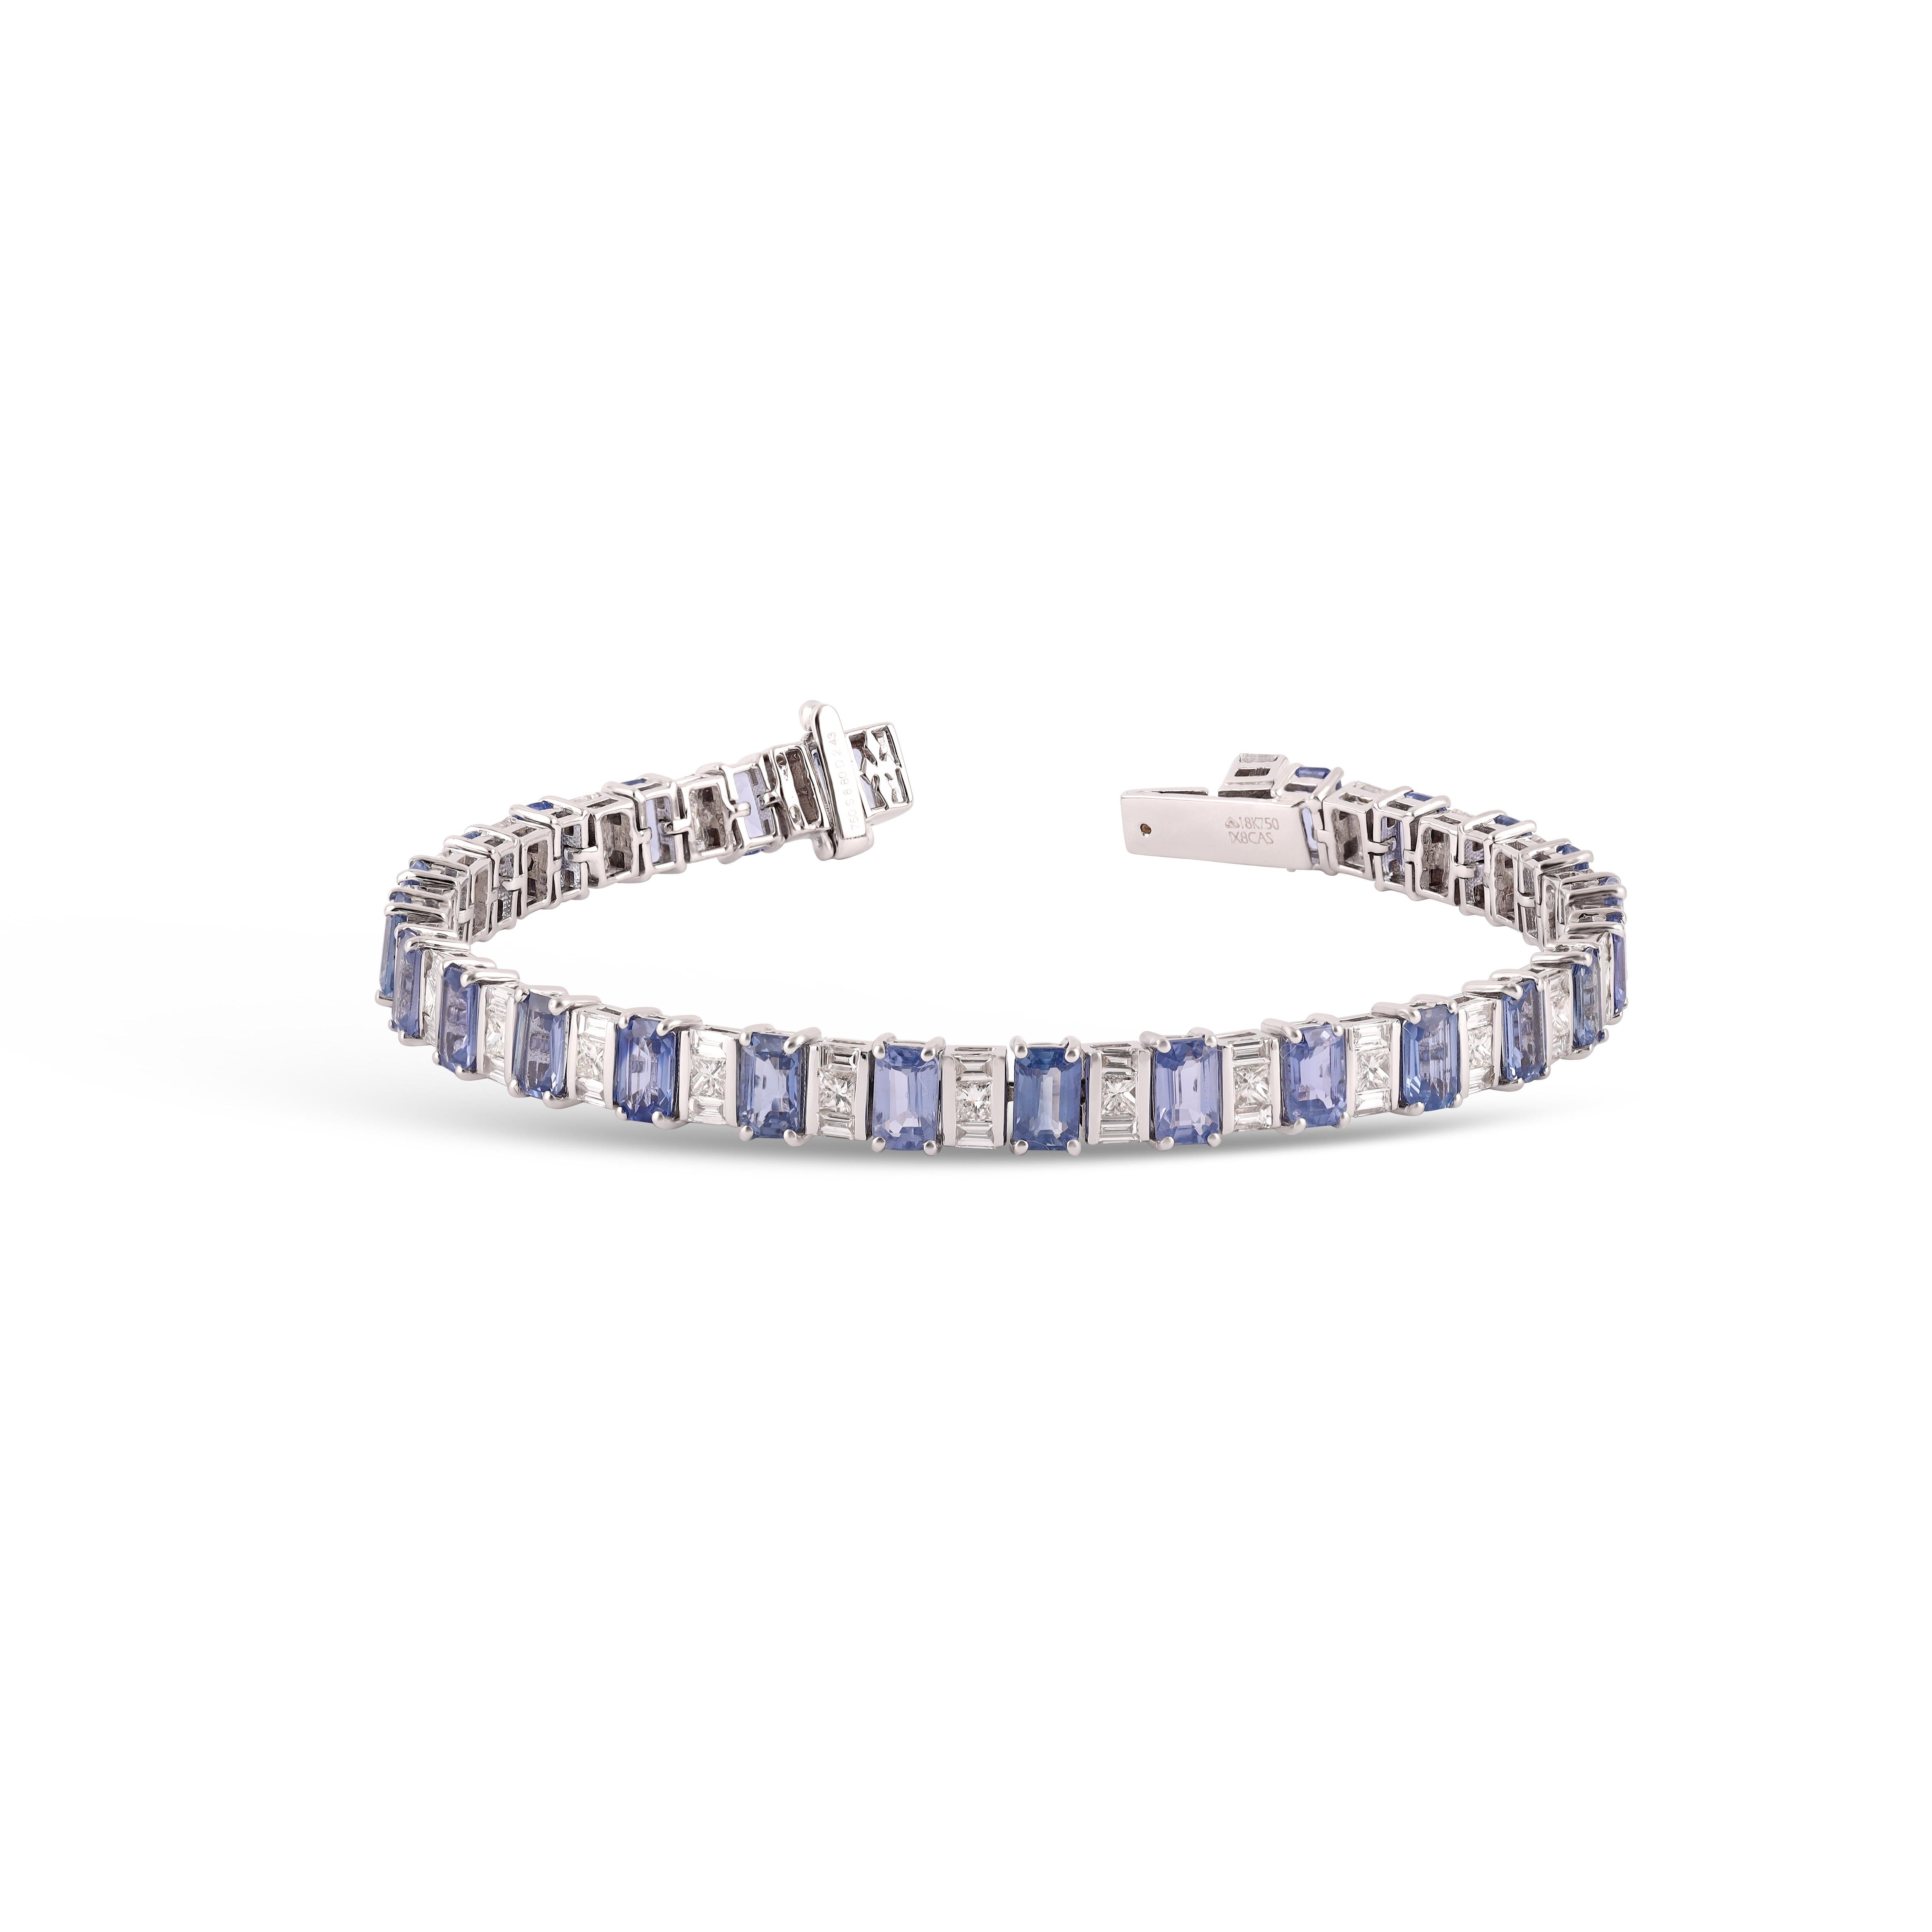 Bracelet de tennis multi-saphirs de 8,80 carats


Détails de la pièce :
Saphir multiple : 8,80 carats
Diamant : 2,43
Or : 18 K.

